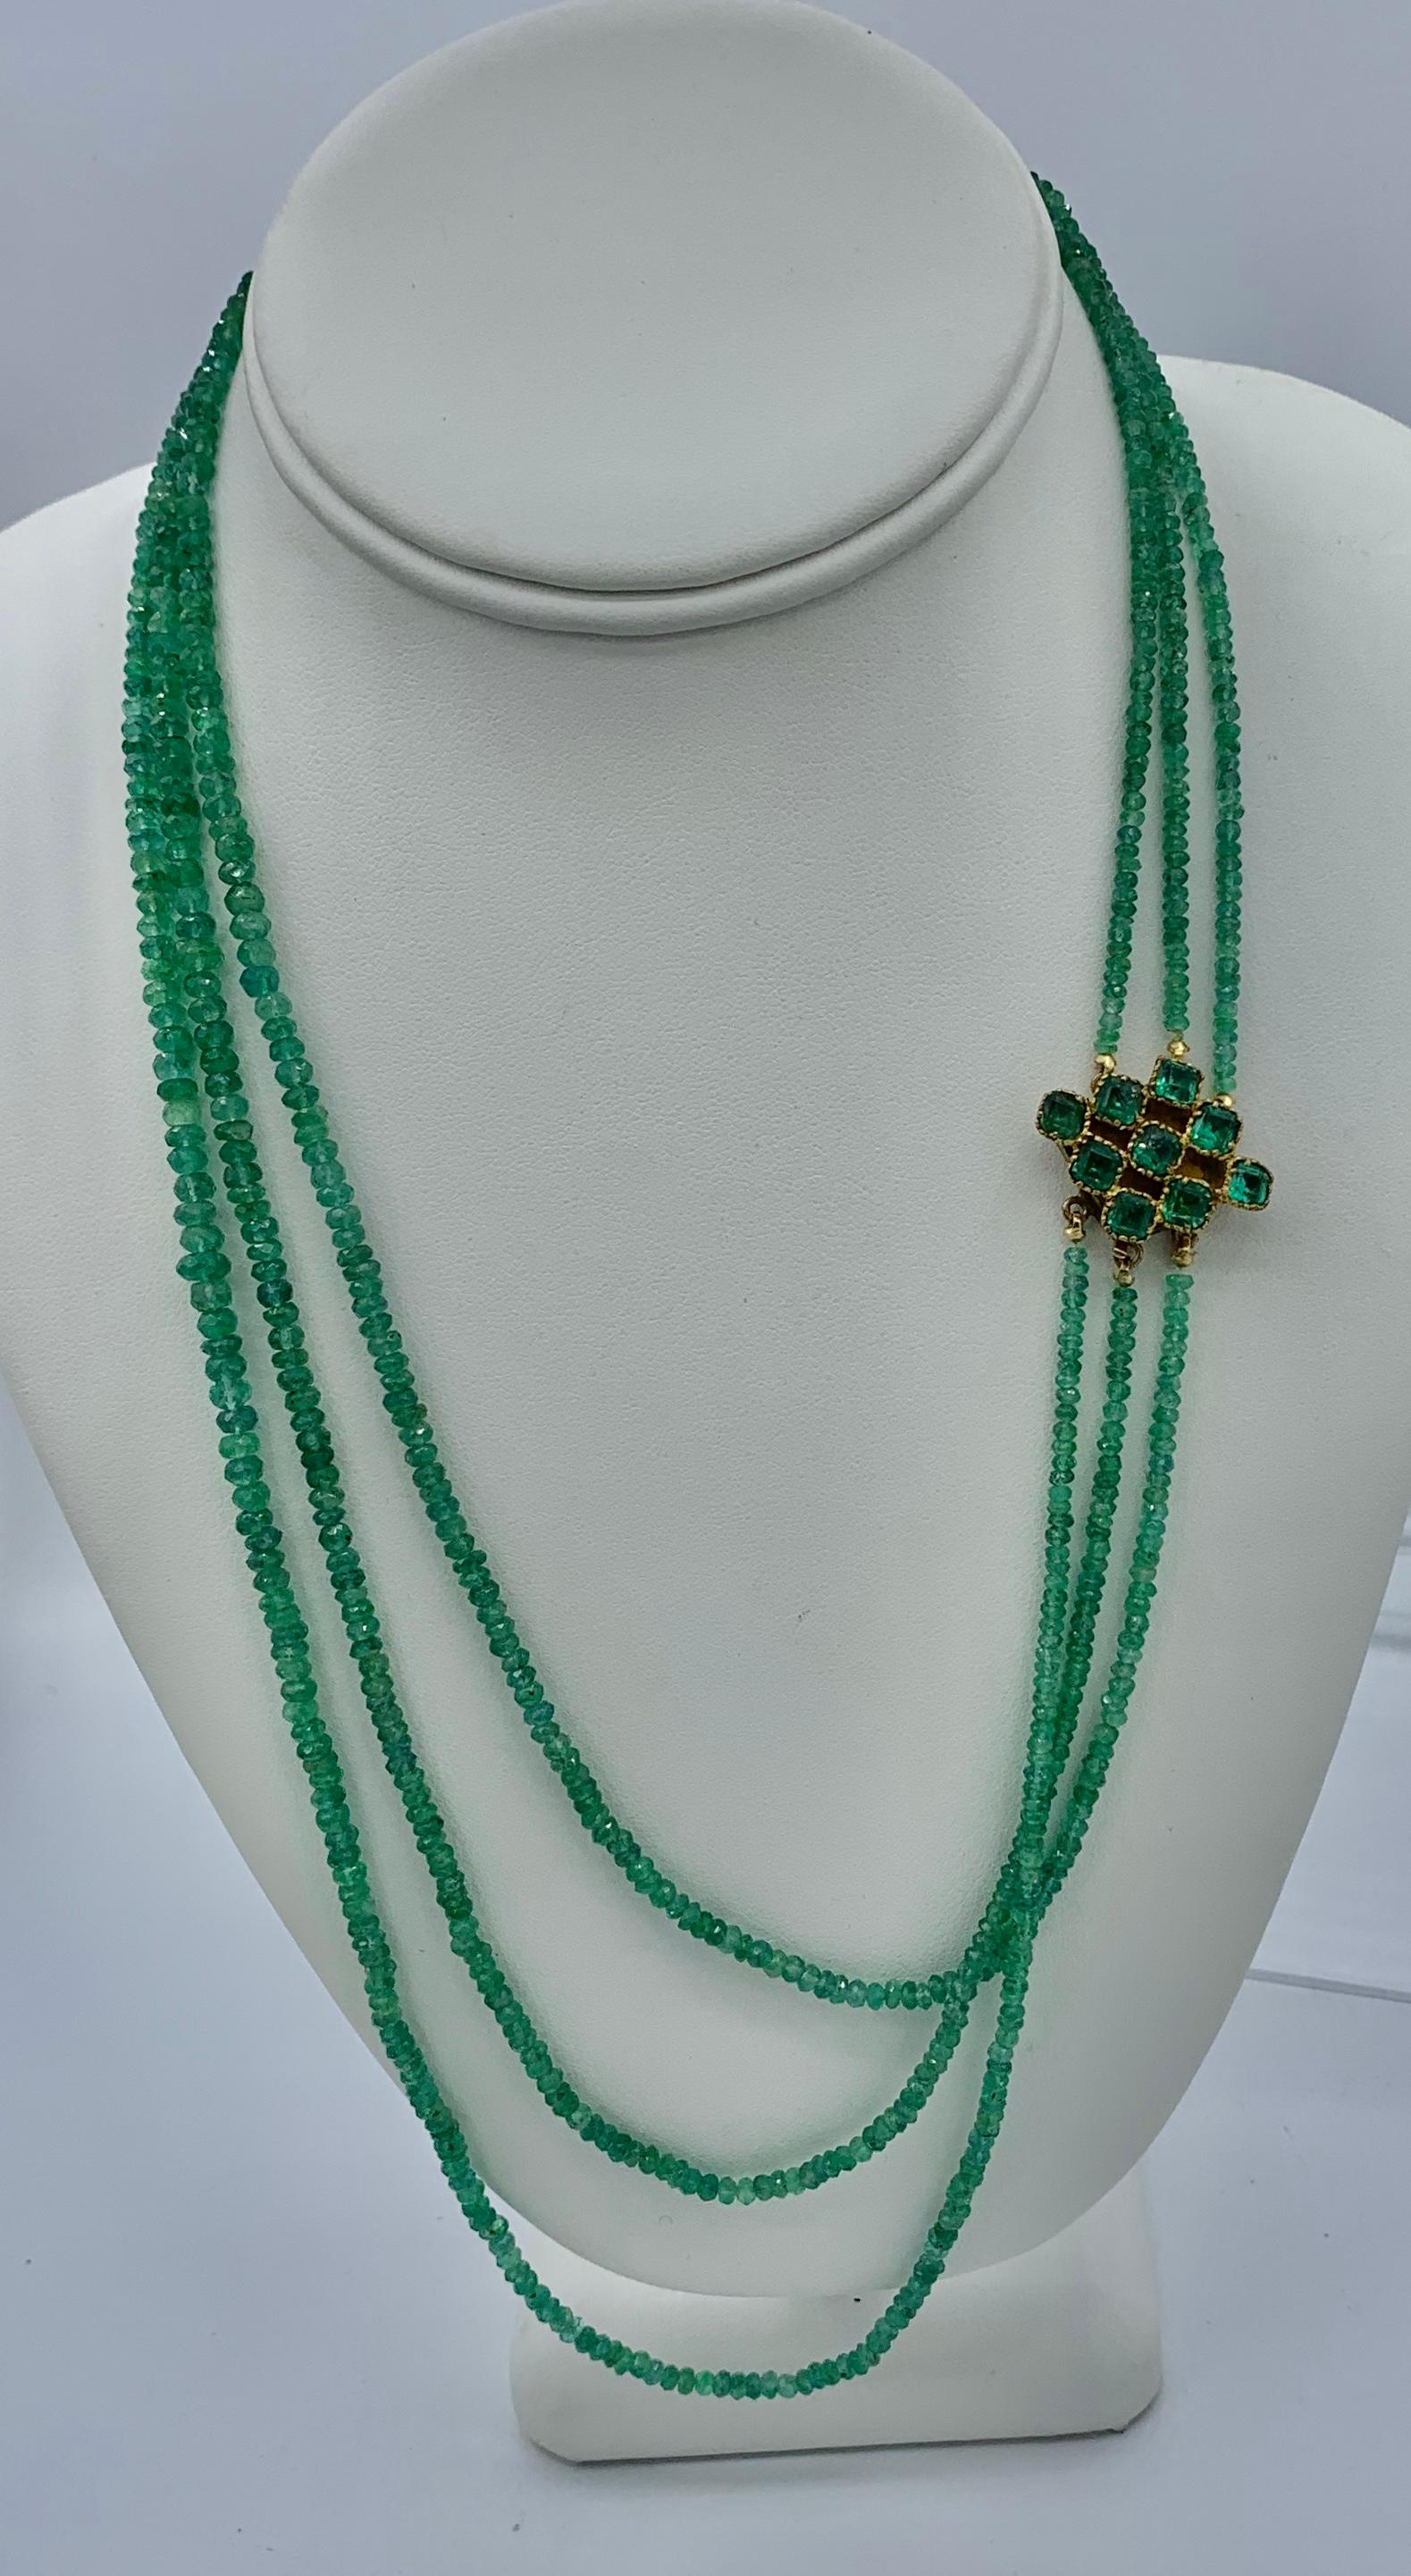 Dies ist eine strahlende Smaragd-Halskette mit drei Strängen von abgestuften funkelnden natürlichen Smaragd-Perlen mit einem fabelhaften Smaragd-Verschluss.  Die Smaragdkette ist mit dem kürzesten Strang 22 Zoll (55 cm) lang. Die Schließe ist mit